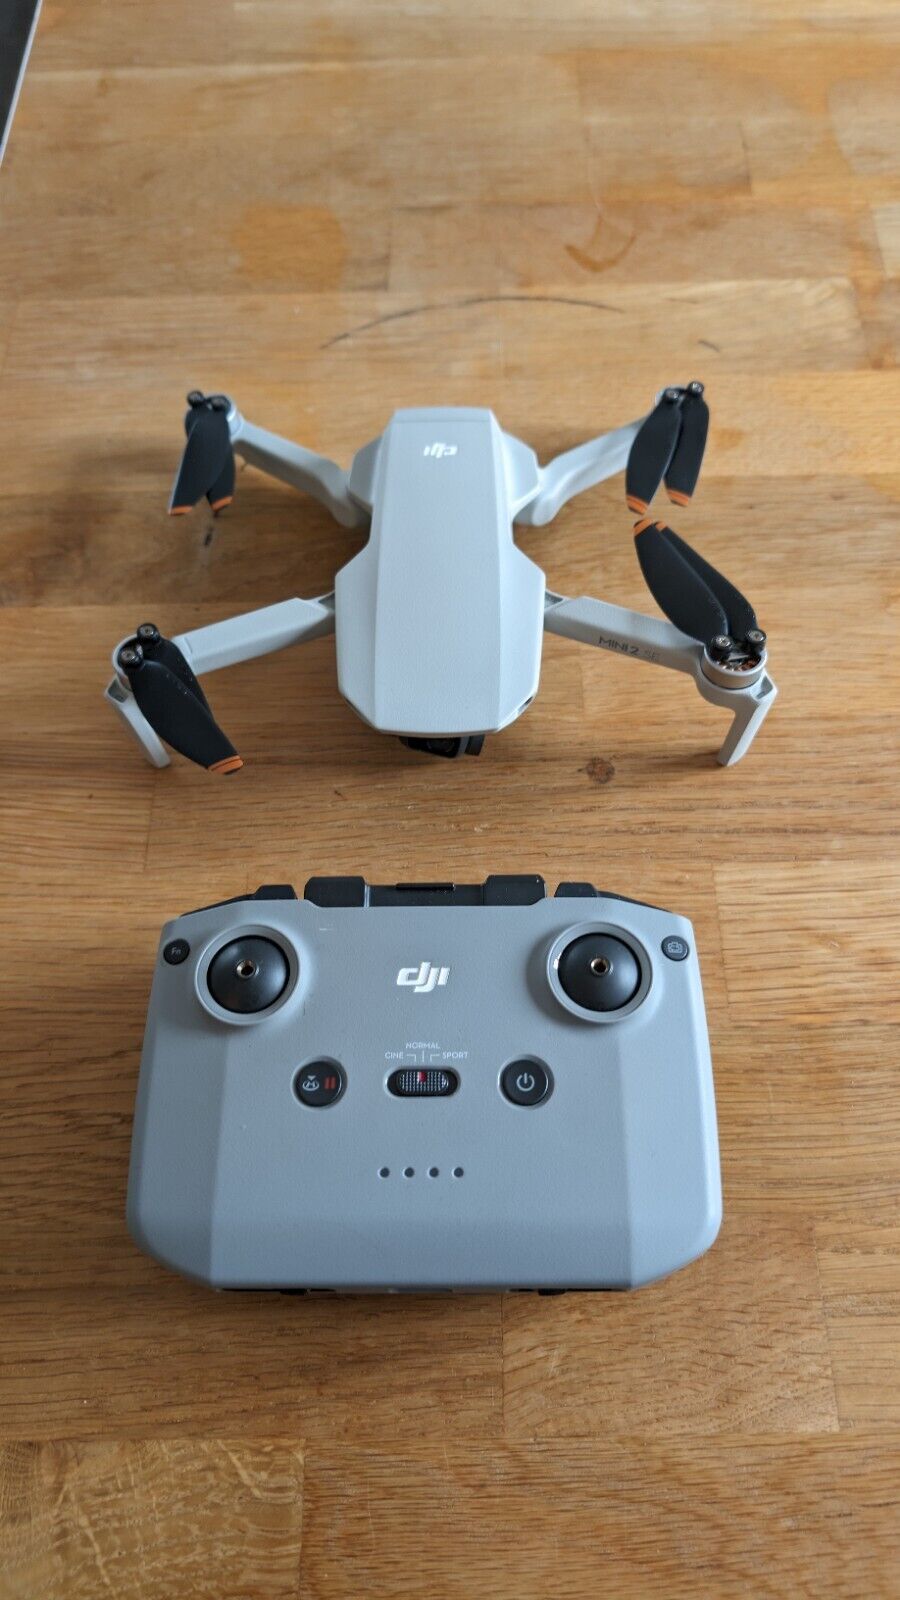  DJI Mini 2 SE Drohne - in Originalausstattung - in Grau